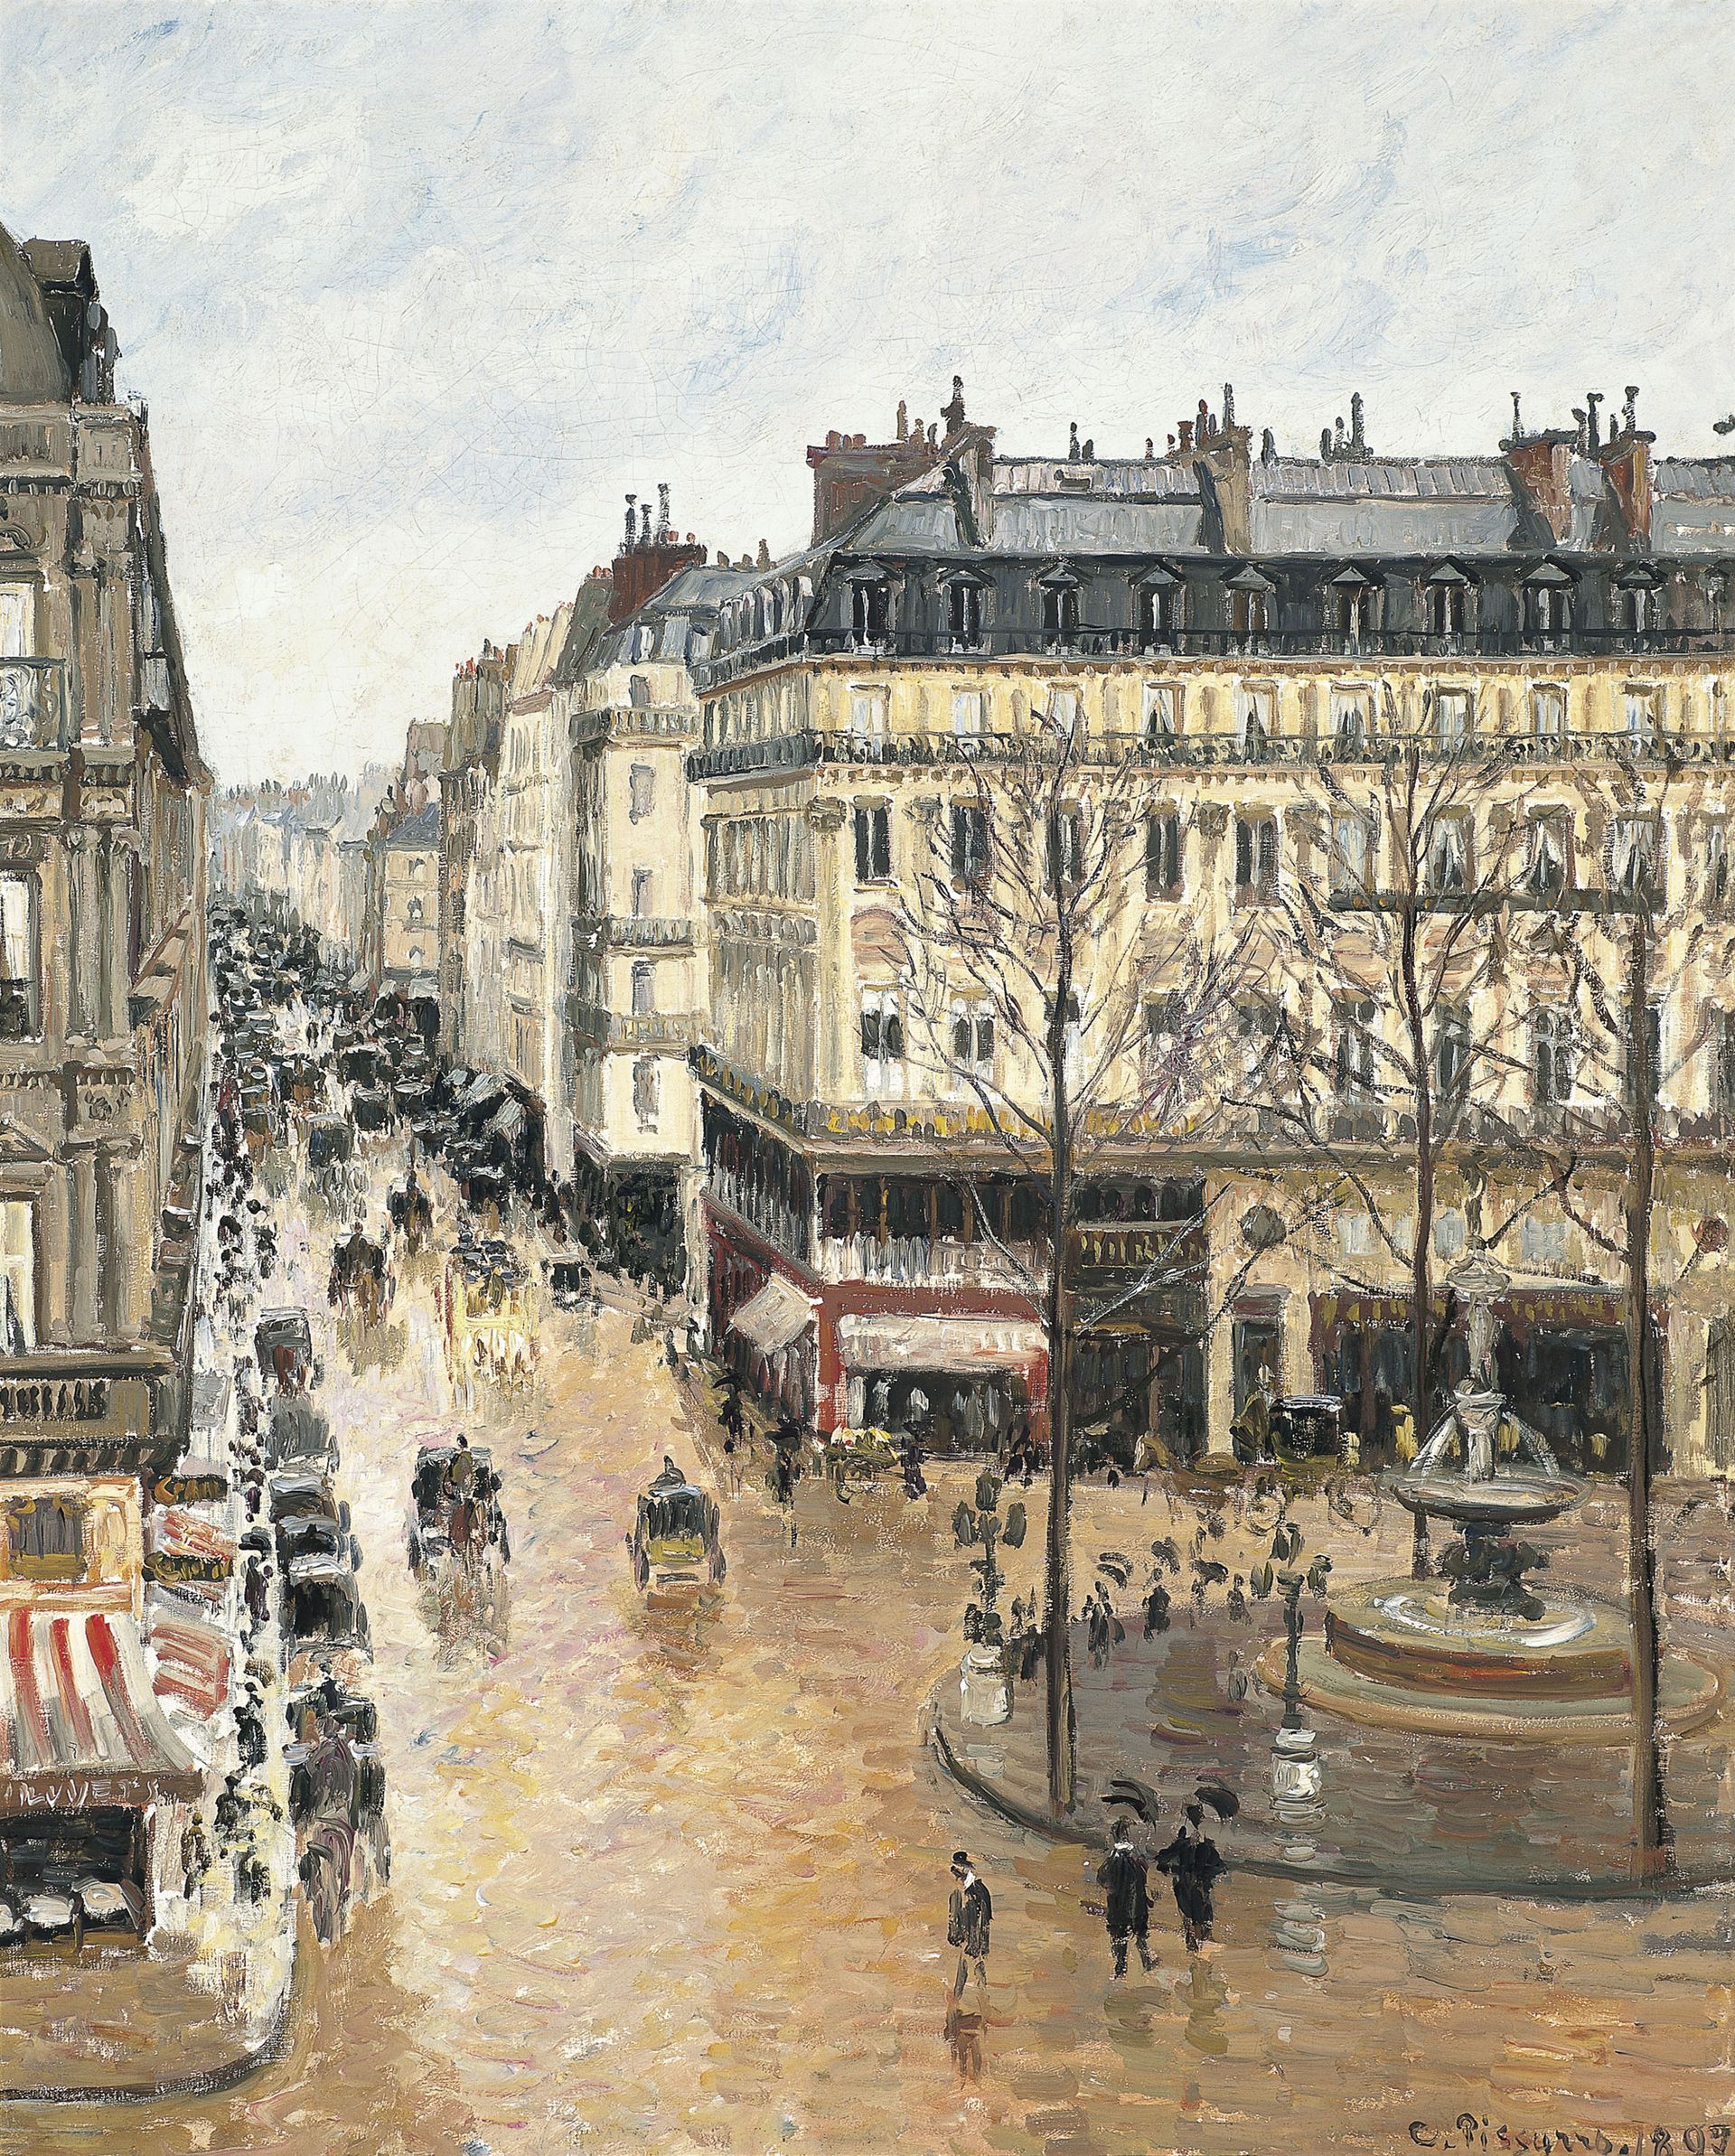 קמיל פיסארו : Rue St Honoré, apres-midi, effet de pluie (1897)

Museo Nacional Thyssen-Bornemisza מדריד, באמצעות ויקימדיה